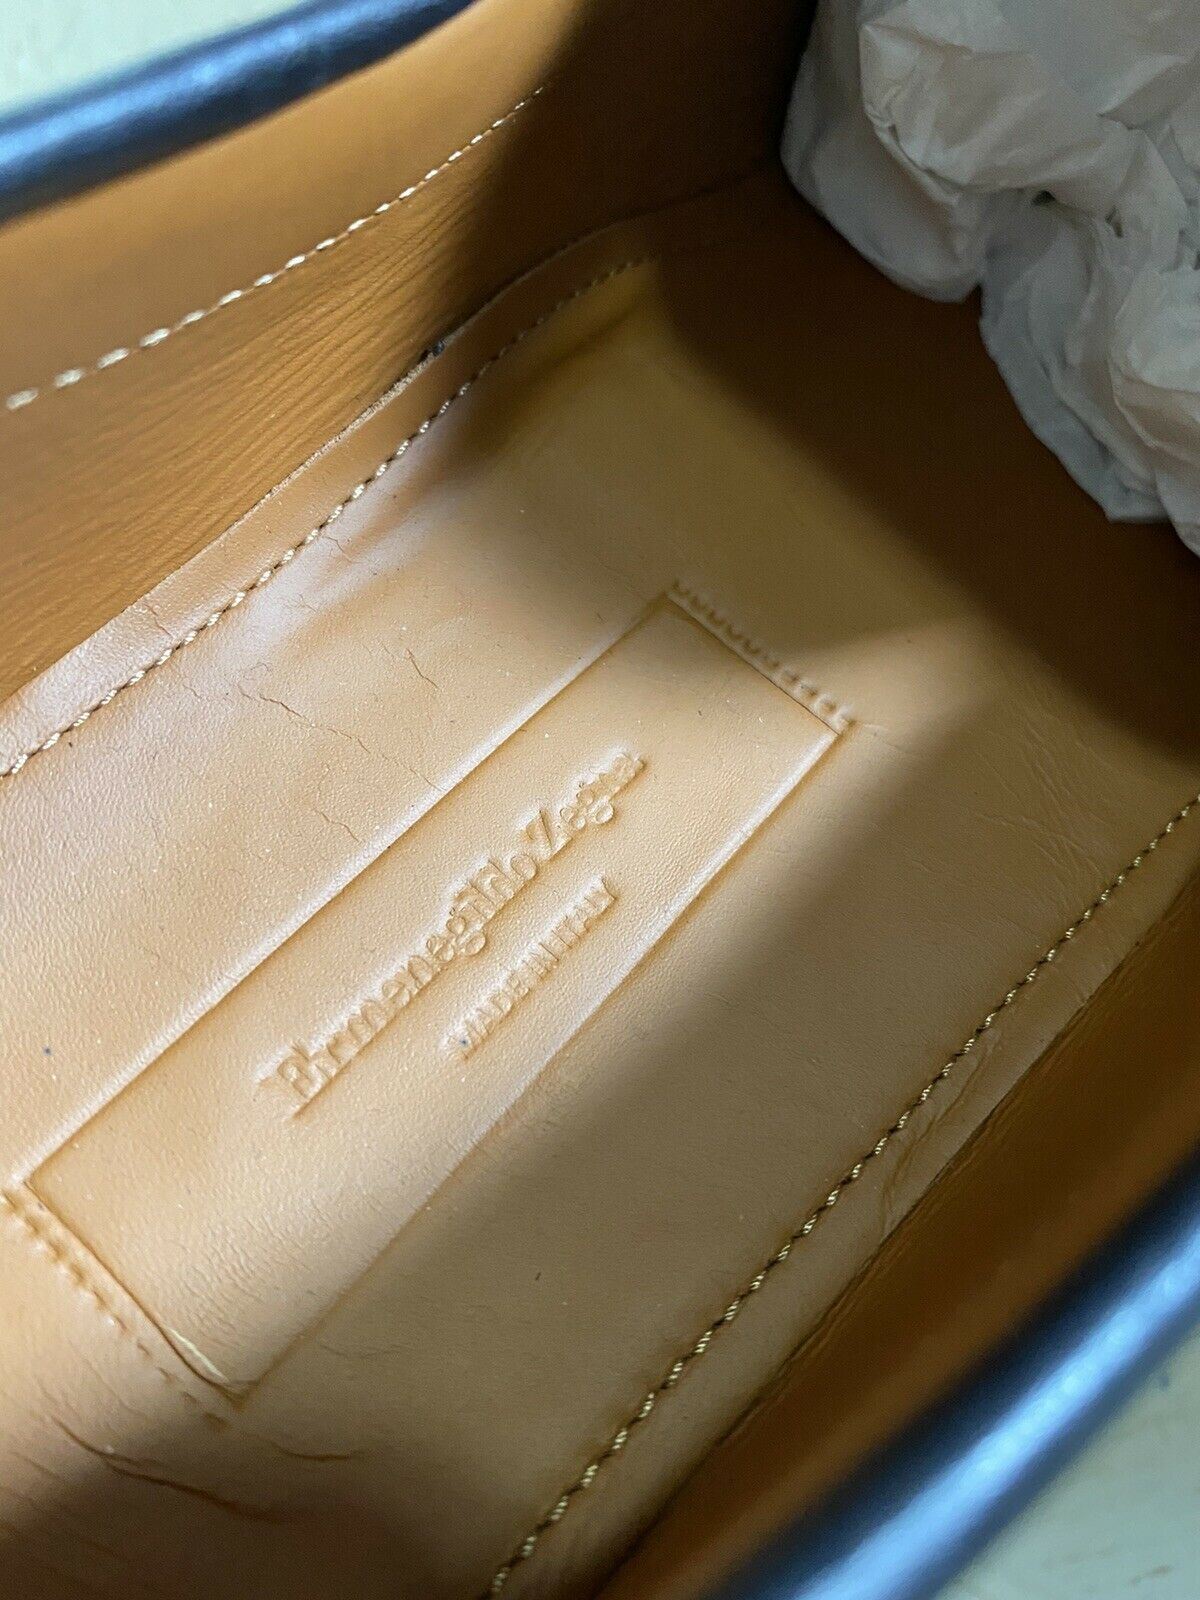 Новые мужские кожаные лоферы Ermenegildo Zegna, черные 11, США, Италия, $625